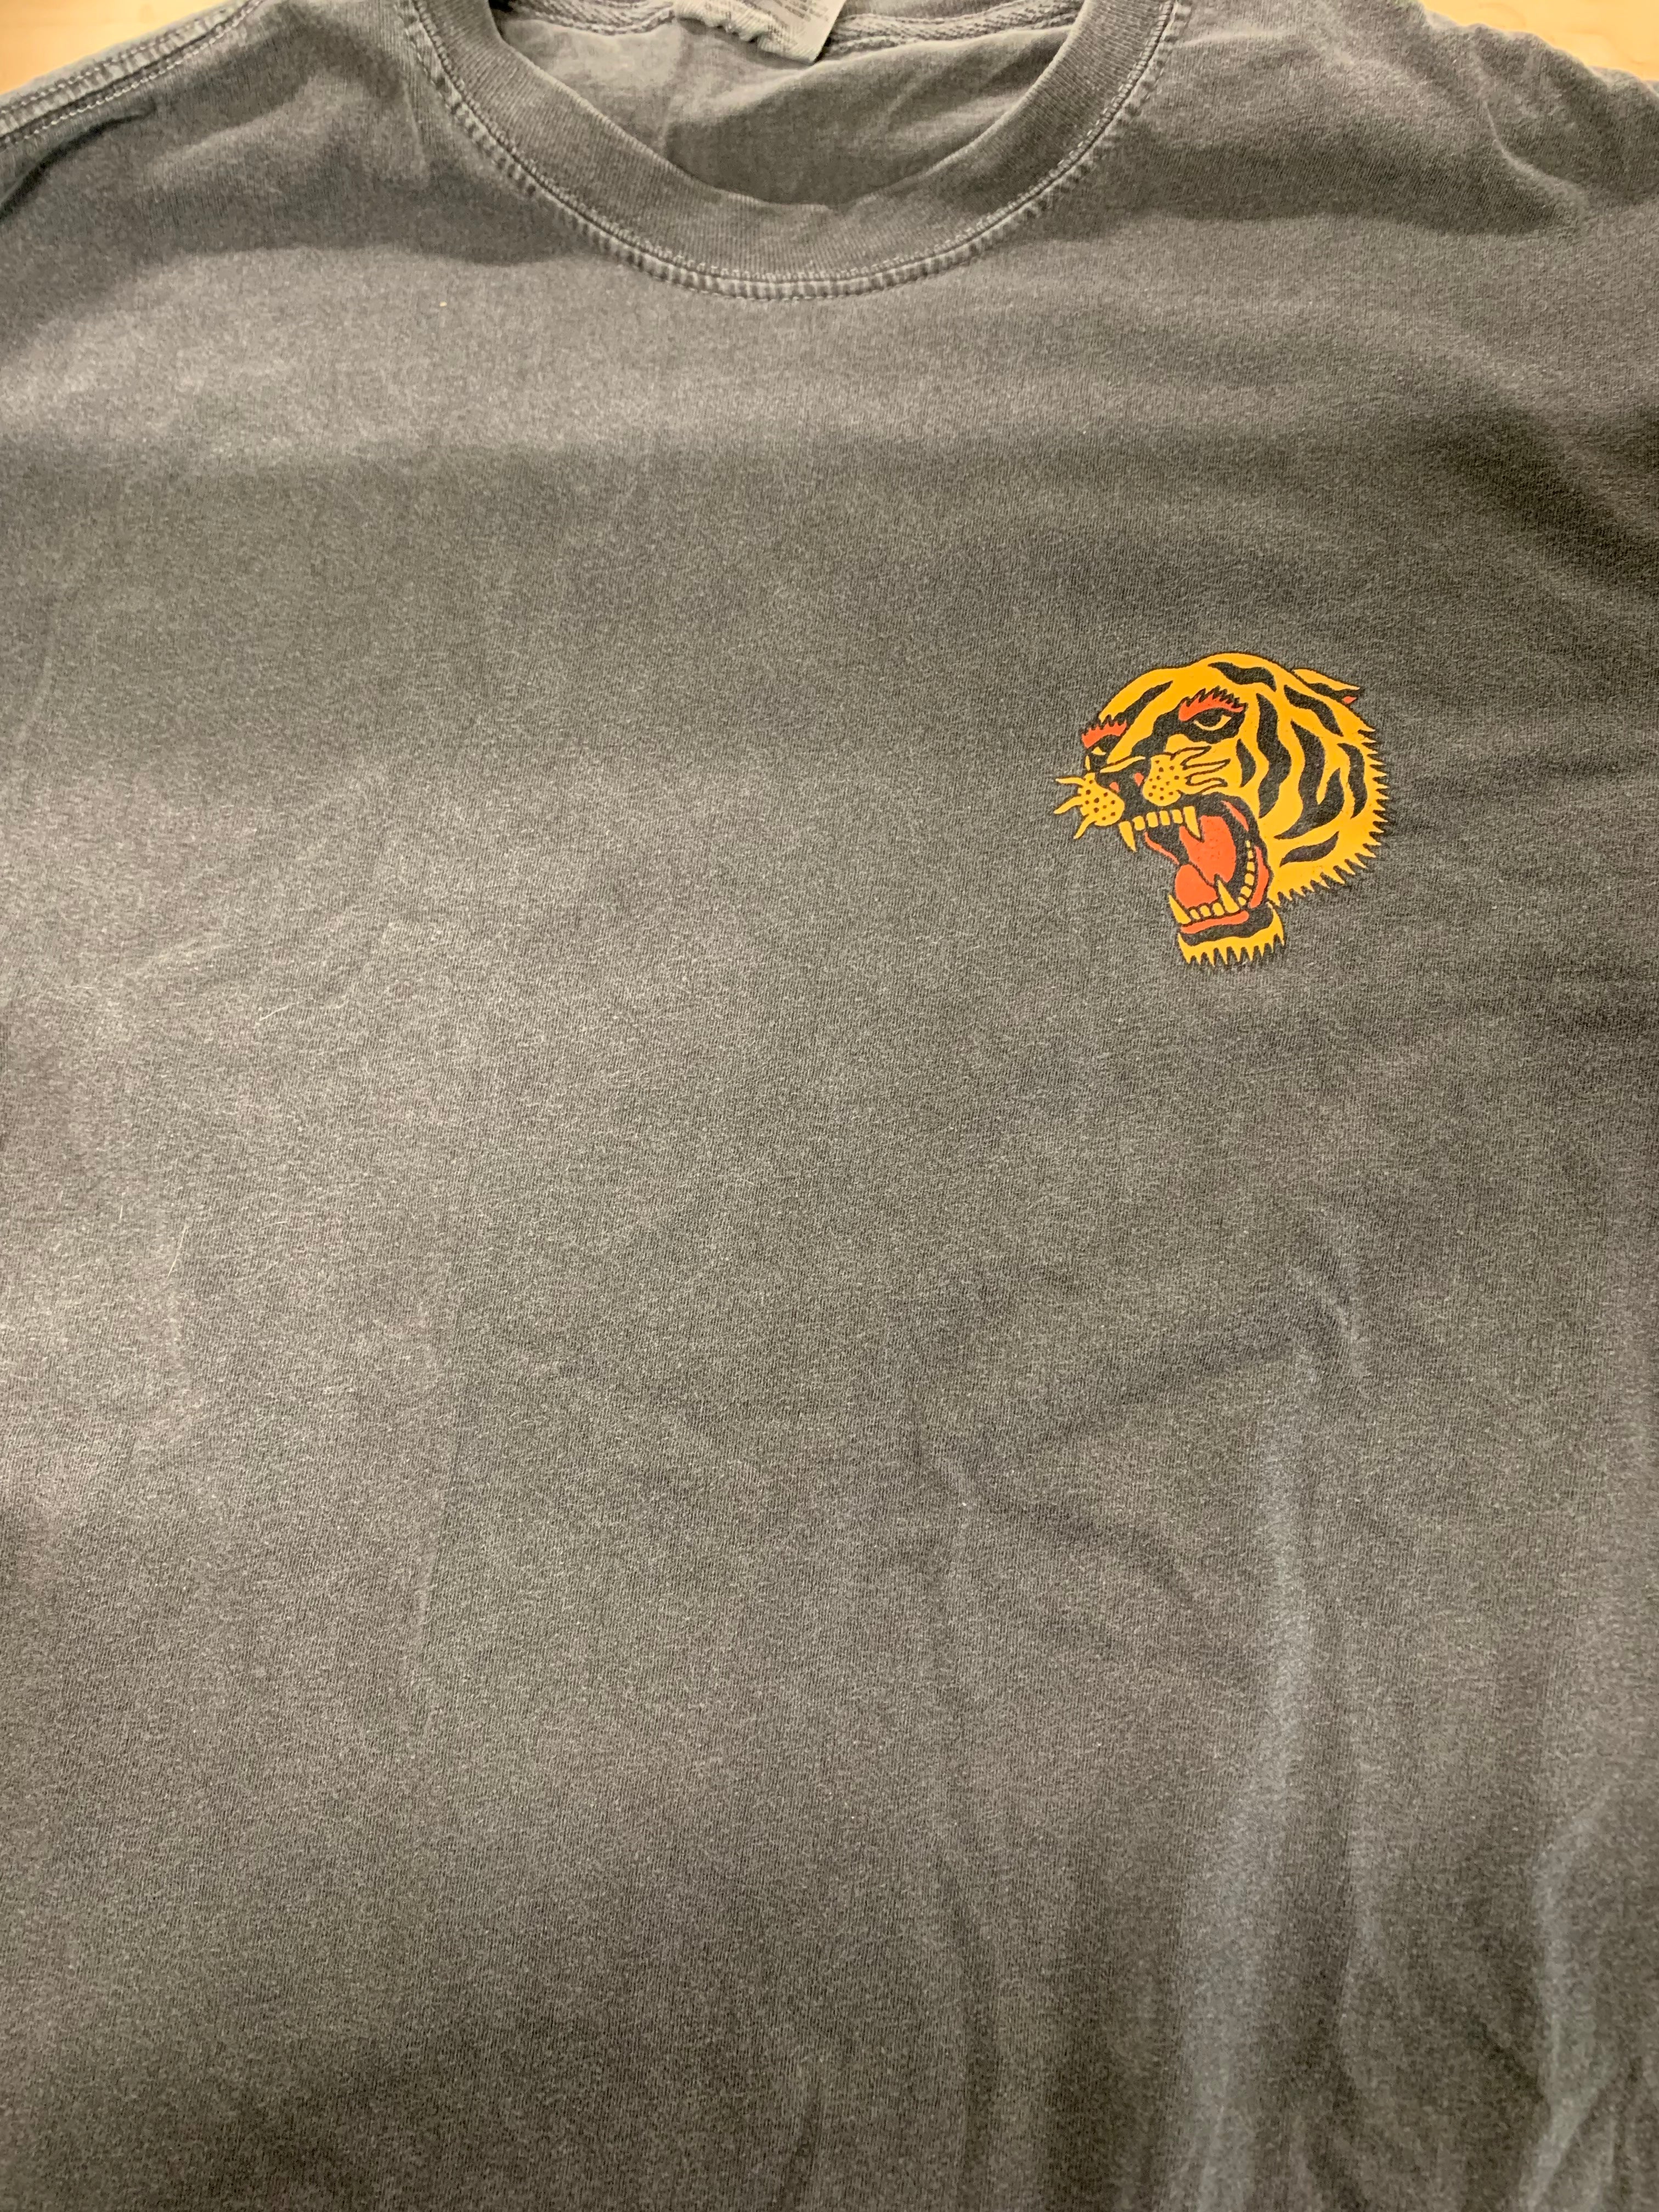 Dashboard Confessional Tiger Logo T-Shirt, Grey, L